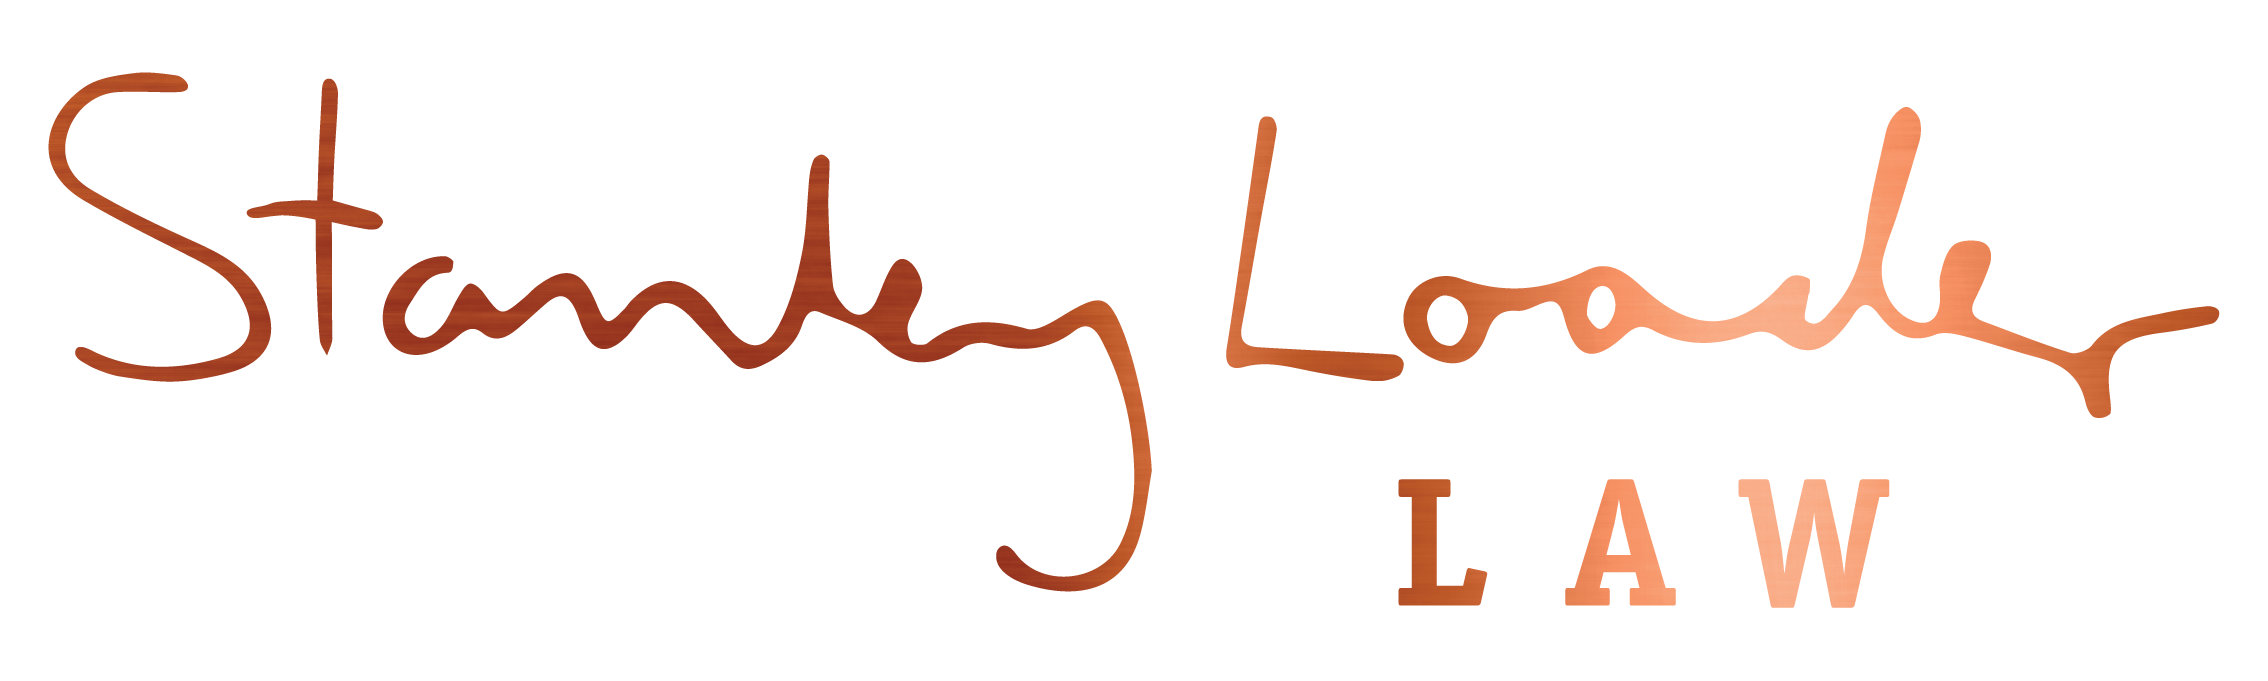 Stanley Loader Law Logo